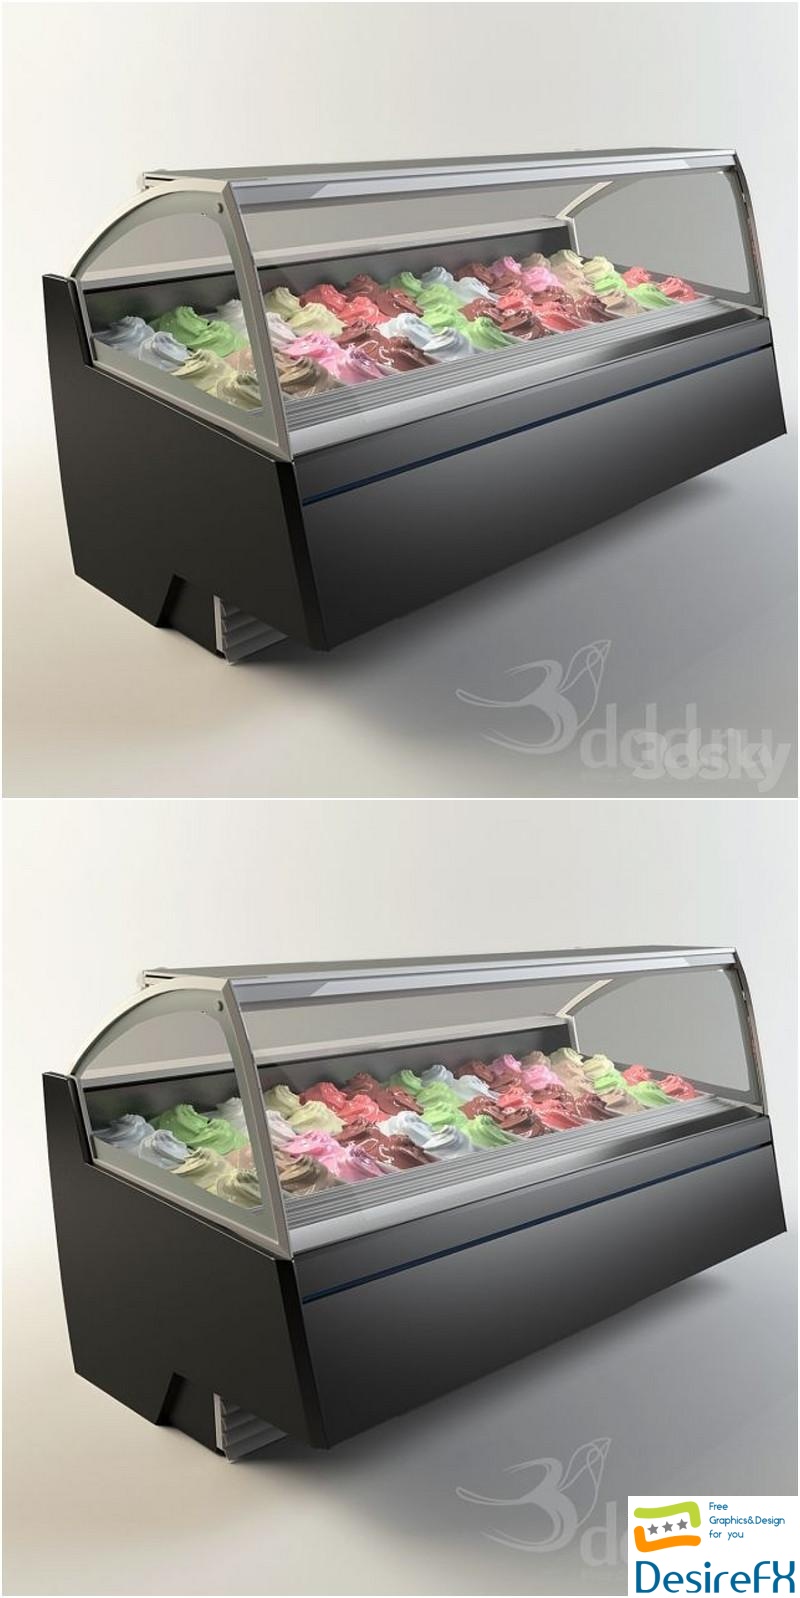 Gelostandard - Elite Freezer 3D Model